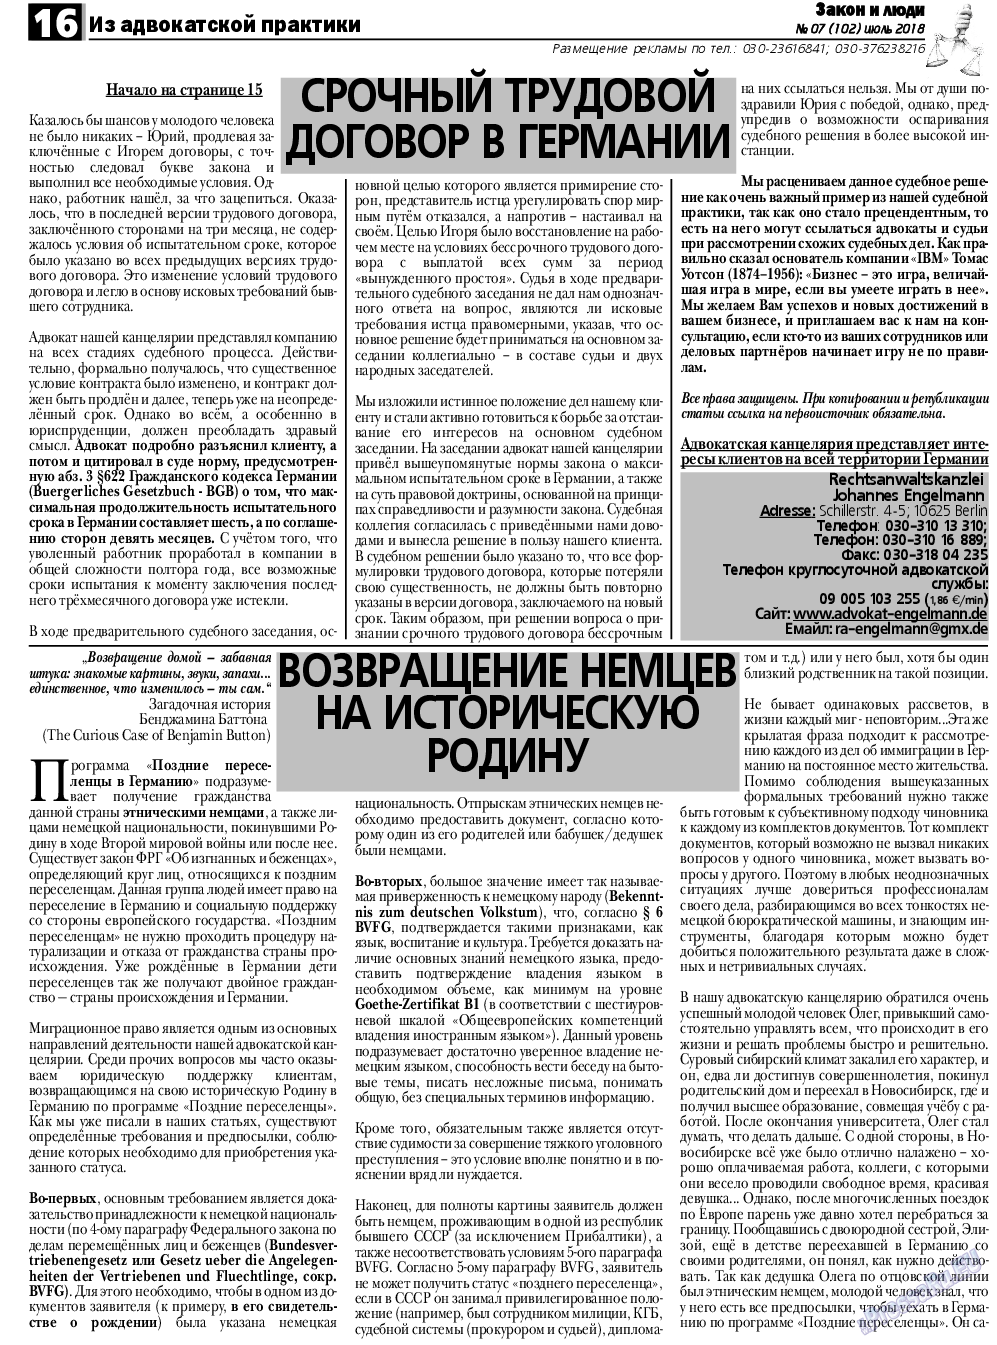 Закон и люди, газета. 2018 №7 стр.16